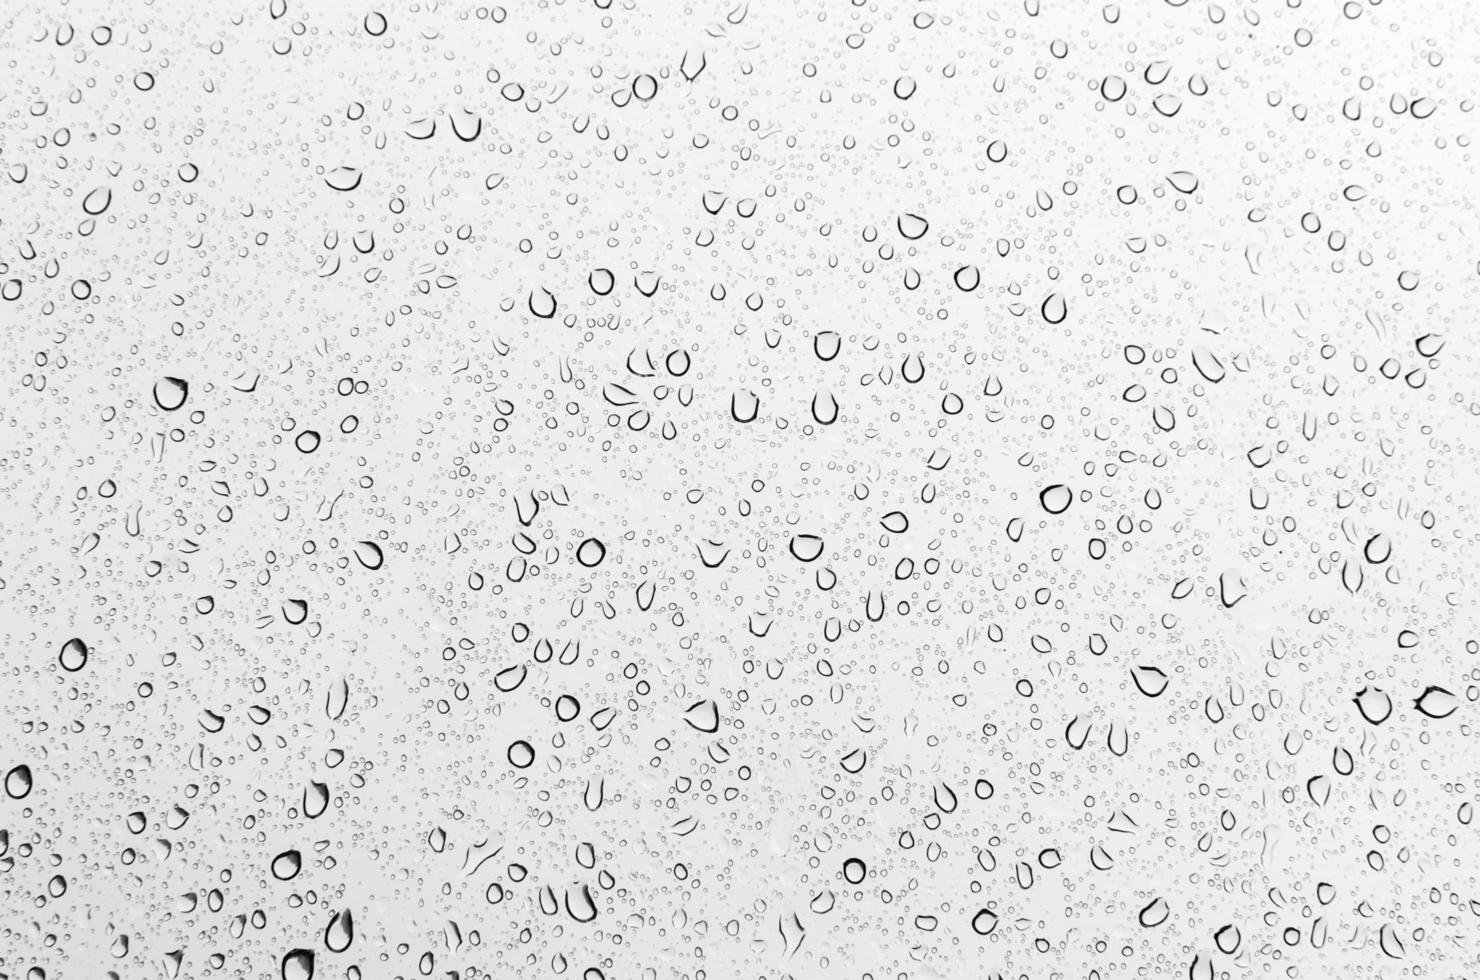 fondo de la temporada del monzón con nubes y lluvia. gota de agua en el espejo. día lluvioso. foto para el concepto de publicidad de venta de banca de marketing financiero empresarial.